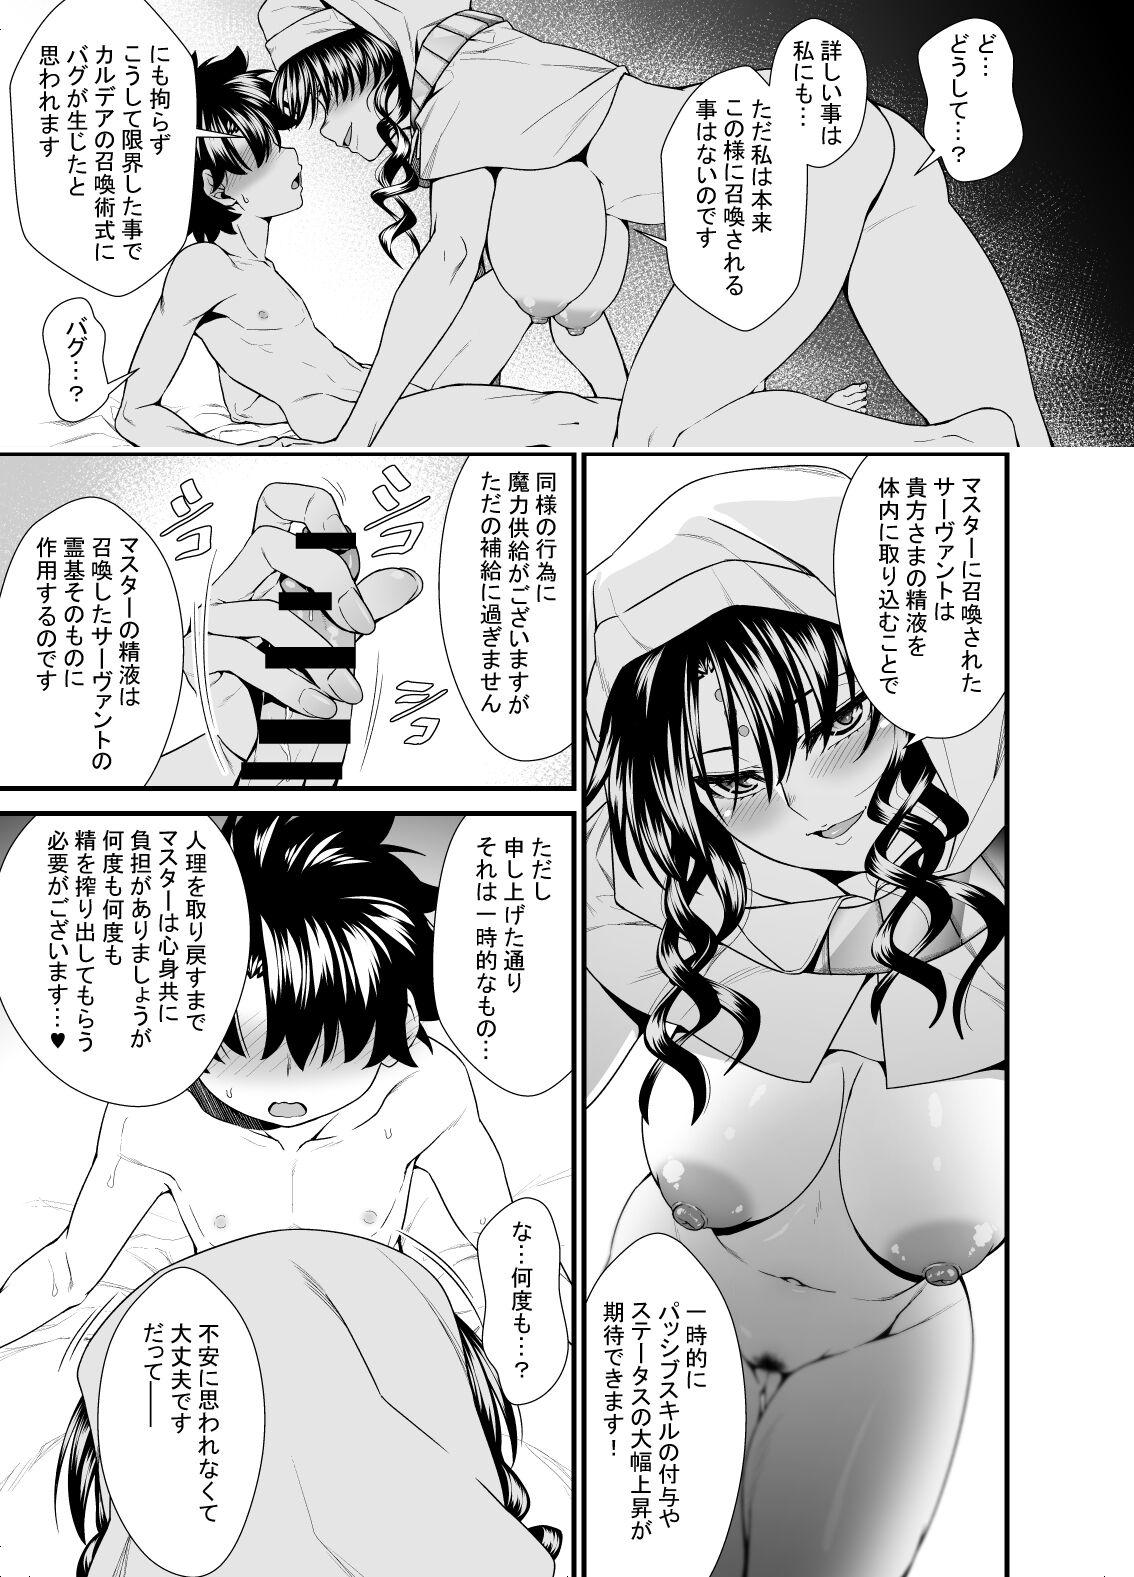 OneShota Manga #01b 5